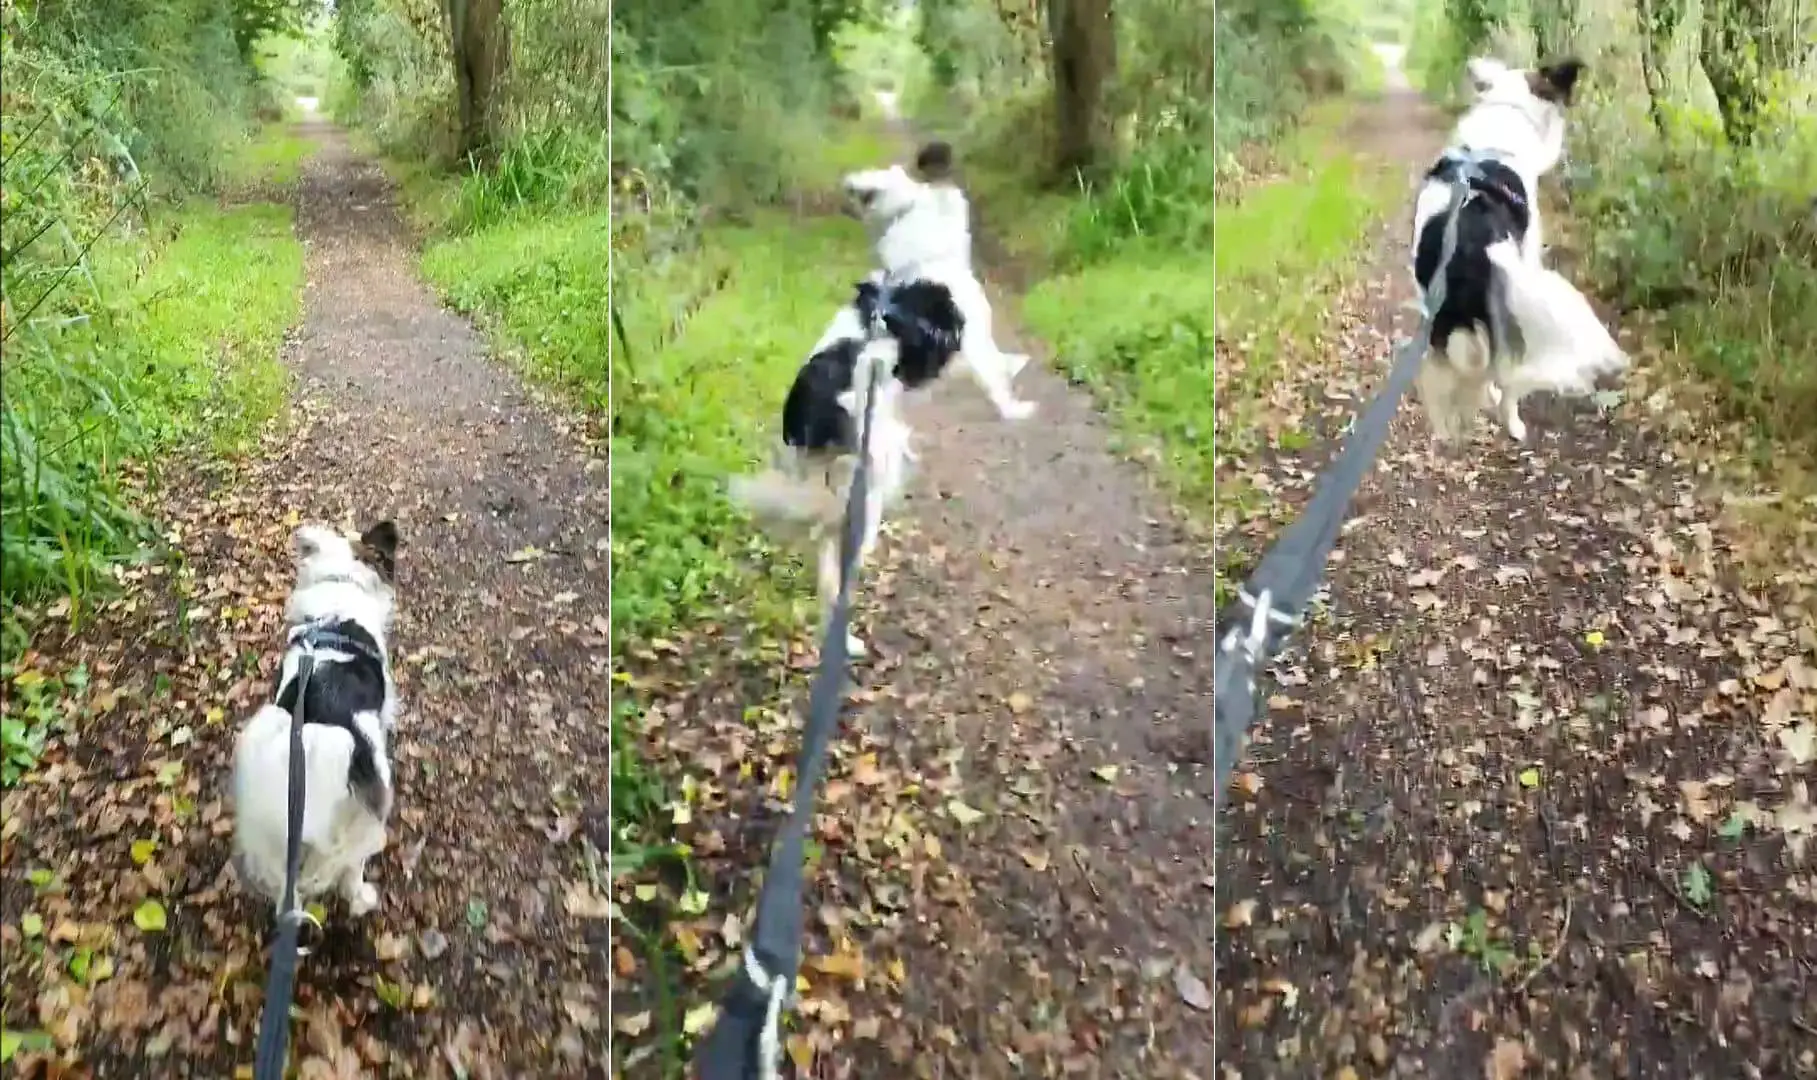 jumping dog - stills from video